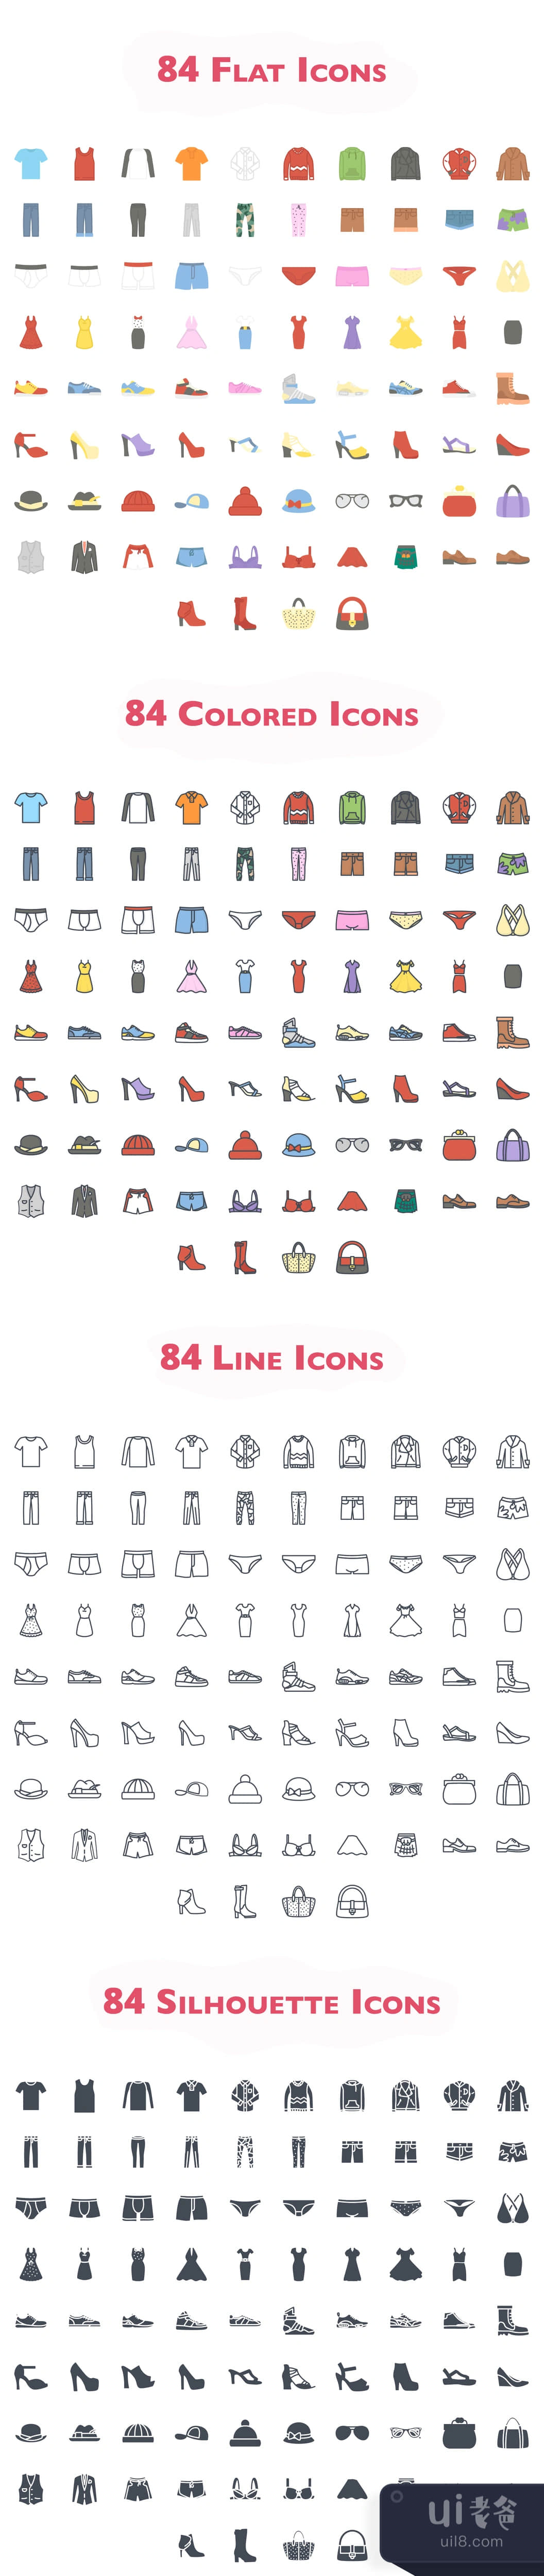 336个衣服图标 (336 Clothes Icons)插图